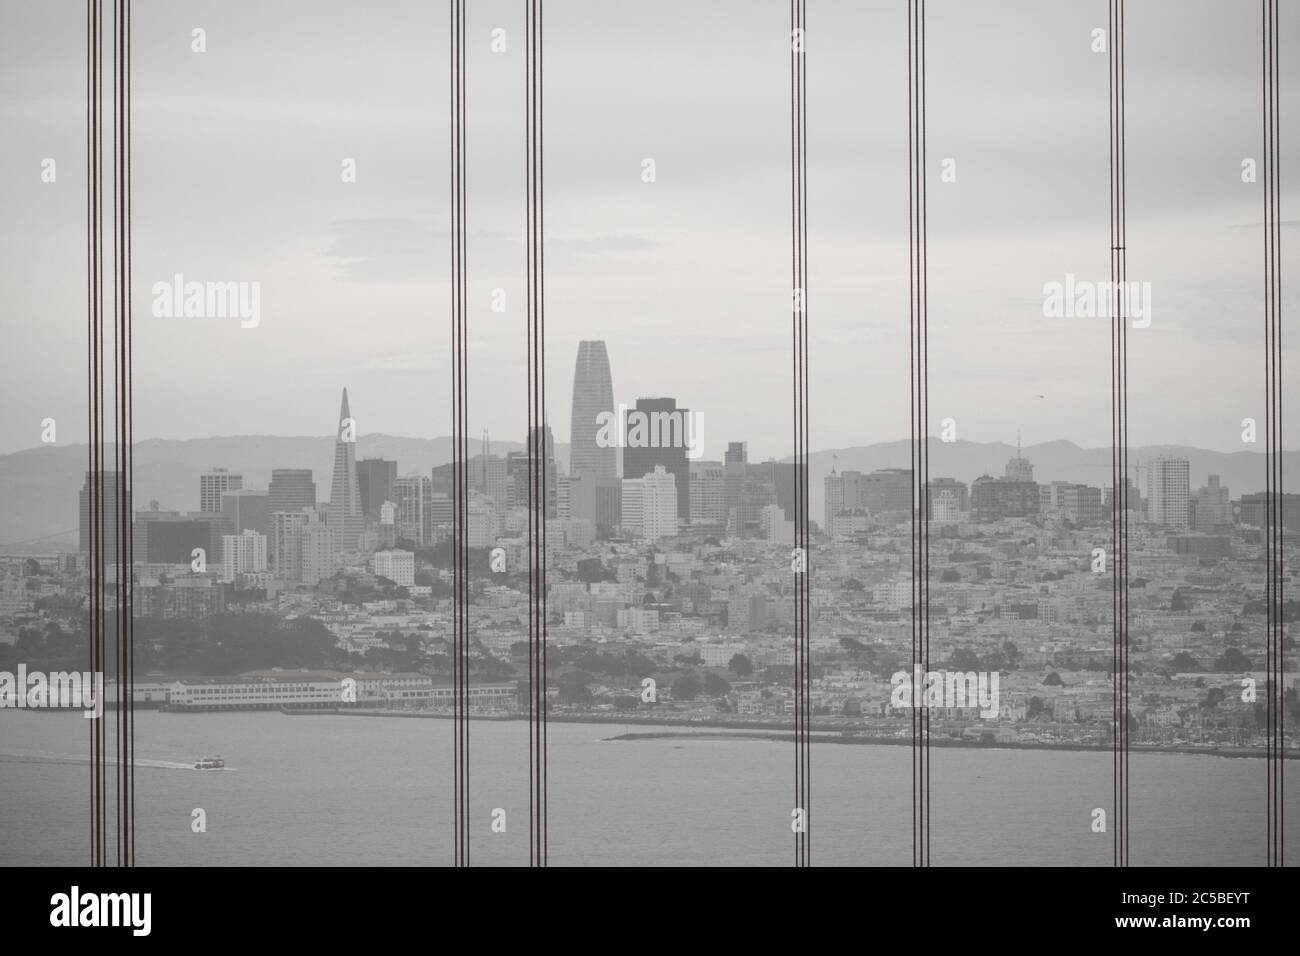 Vista frizzante di San Francisco dal Golden Gate Bridge con i cavi del ponte in primo piano. Embarcadero Center, Salesforce Tower, Transamerica Pyramid. Foto Stock